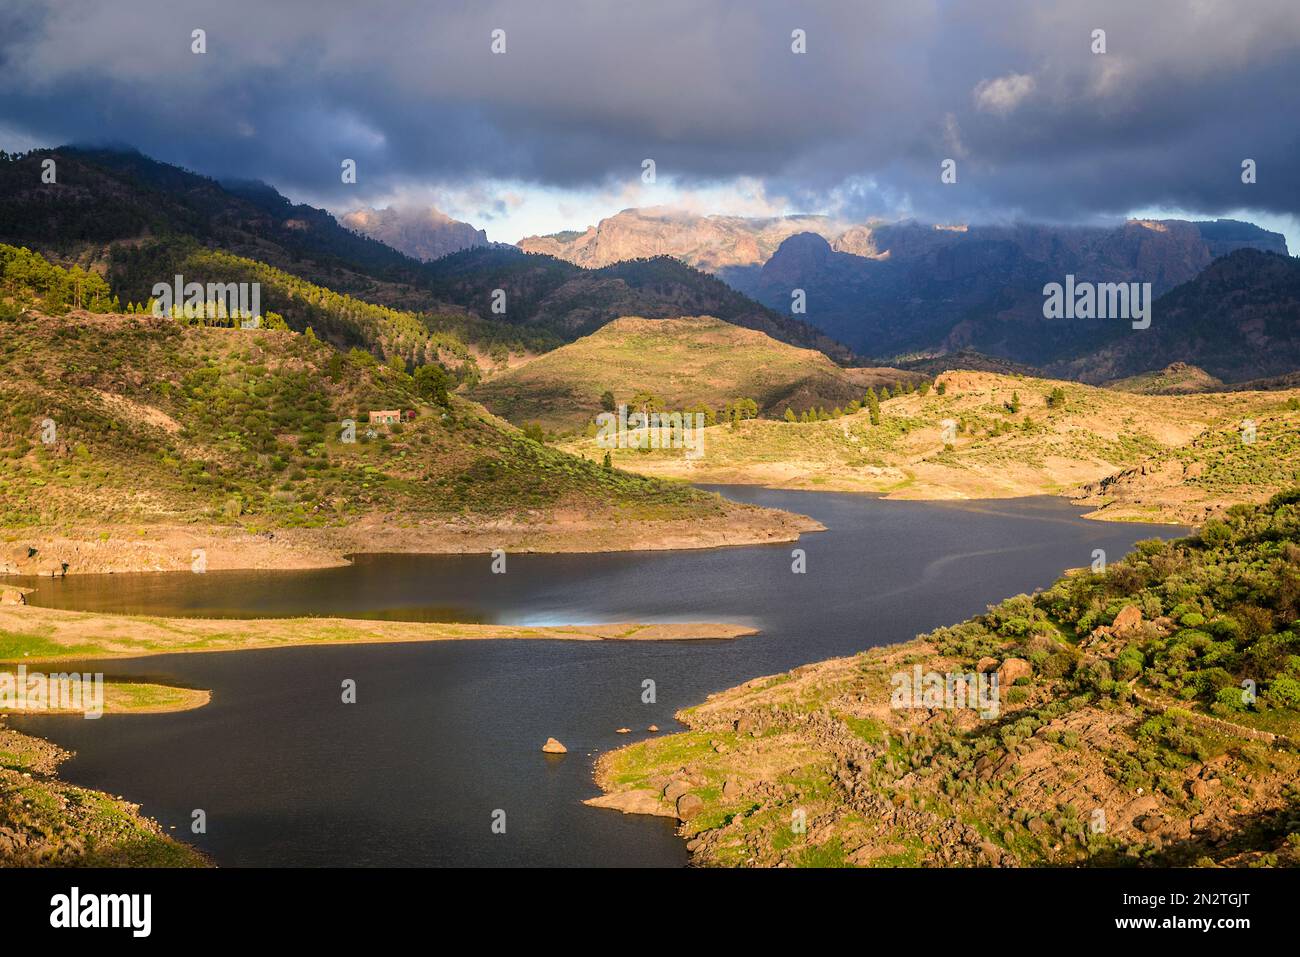 Aerial view of Presa de las Ninas dam, Roque Nublo Rural Park, Tejeda, Gran Canaria, Canary Islands, Spain Stock Photo